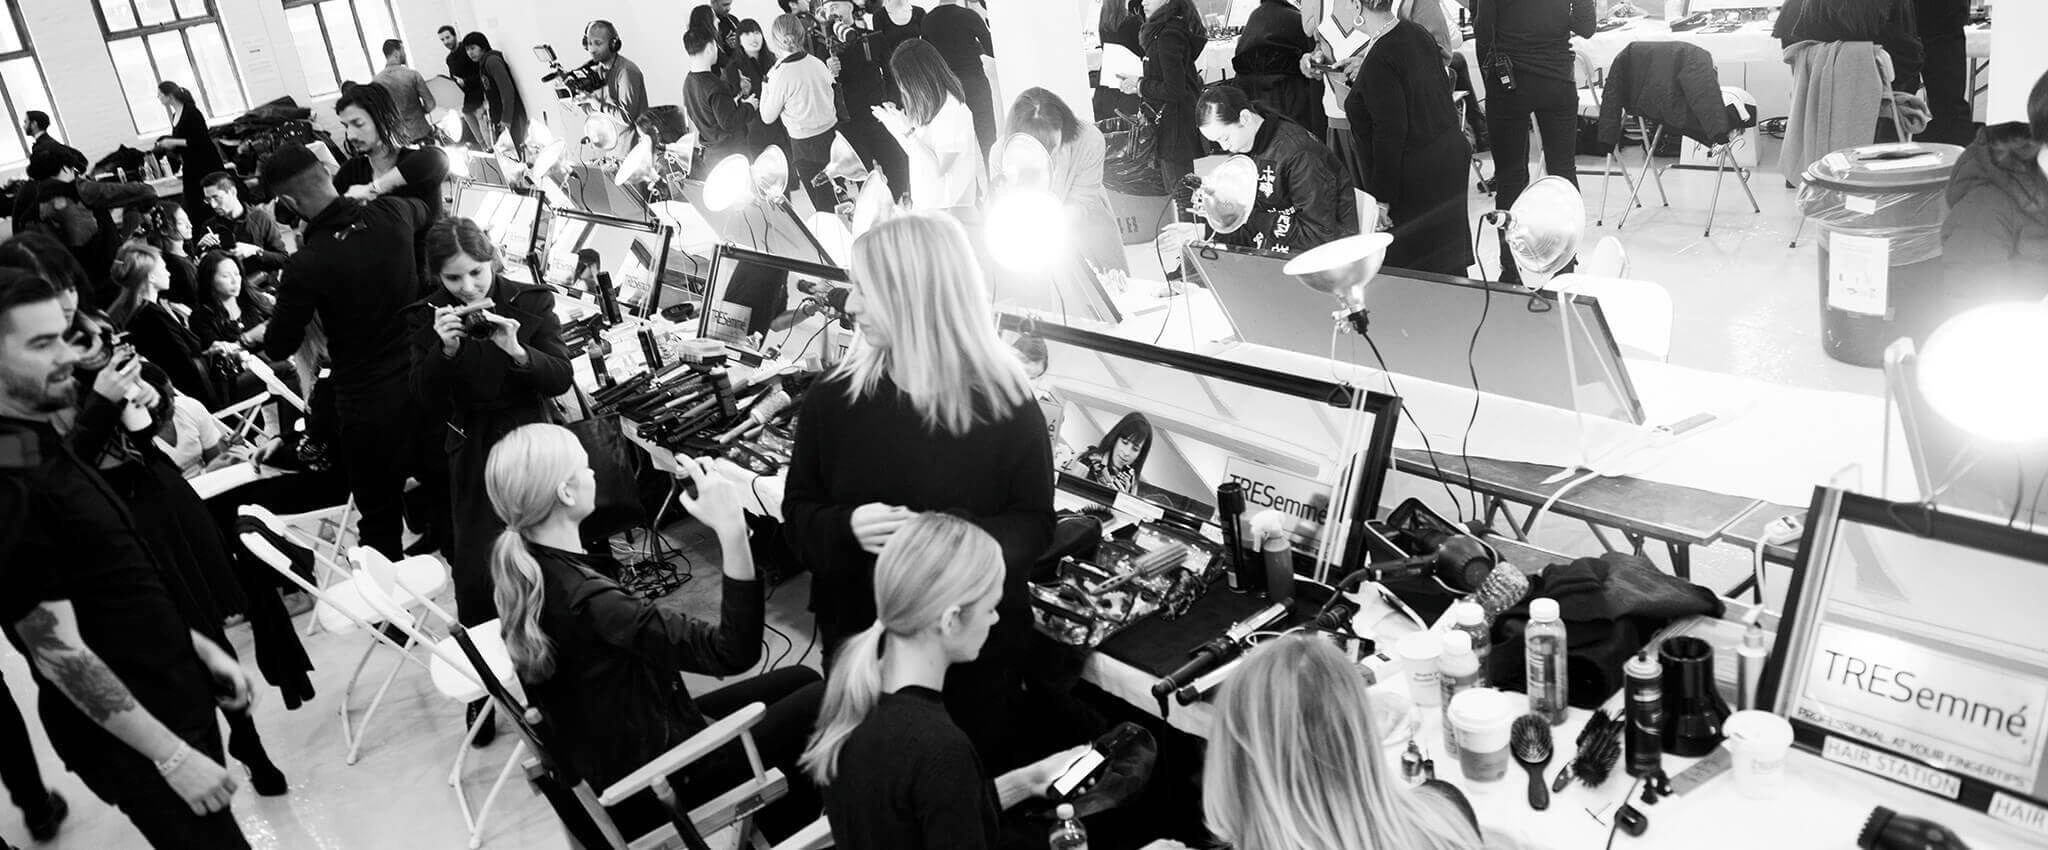 Model-model sedang duduk di depan cermin dengan para penata rambut, fotografer, alat-alat dan produk-produk penataan rambut 